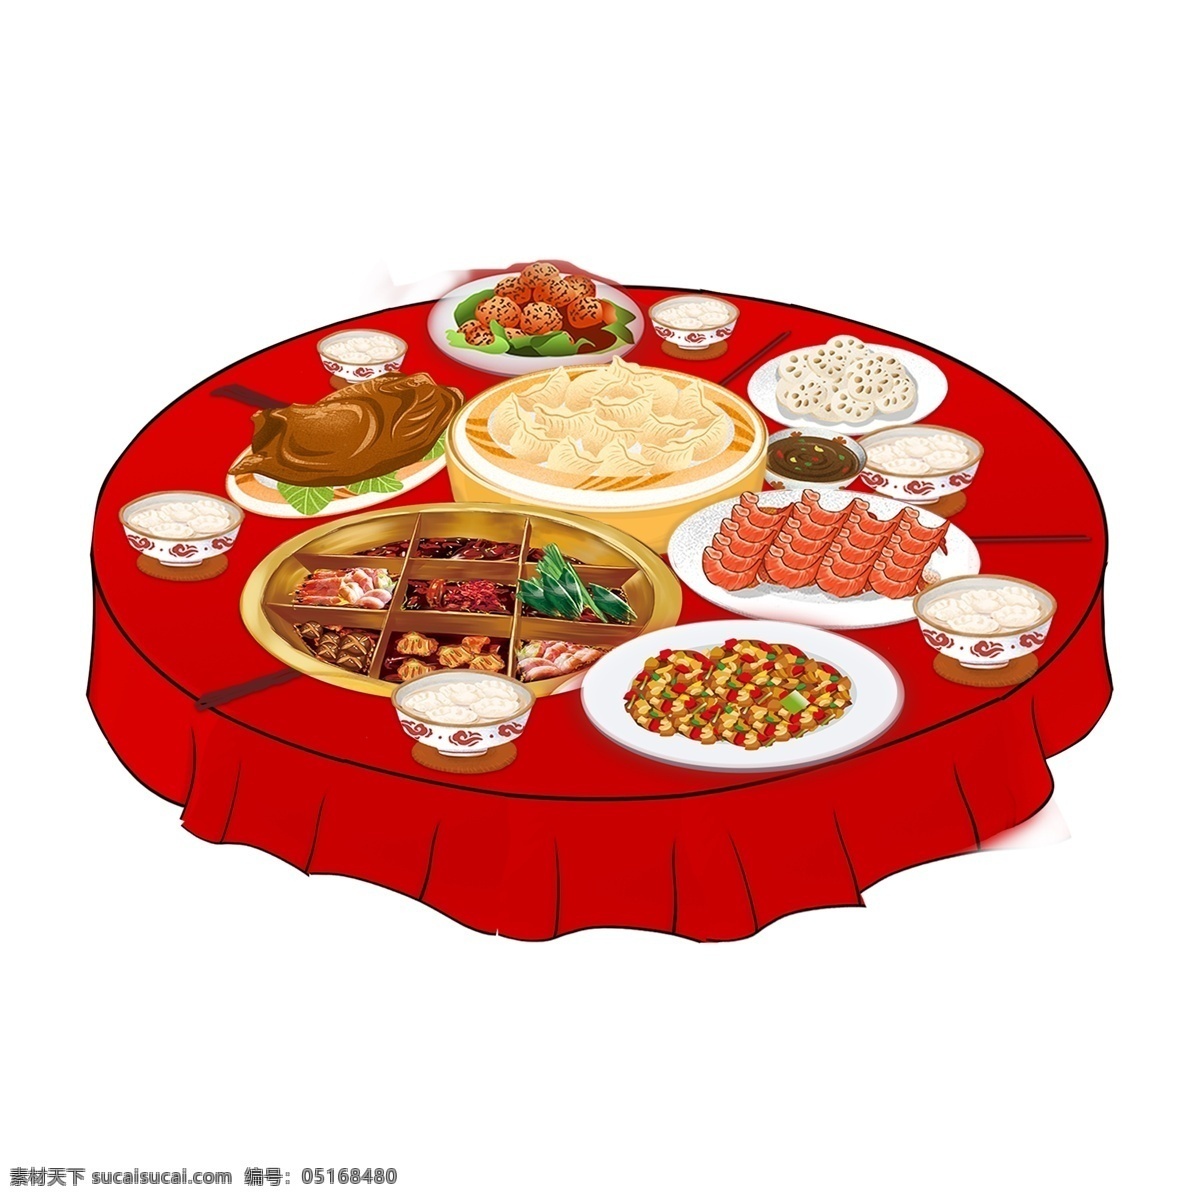 红色 桌子 上一 桌 菜 装饰 元素 桌子上 一桌菜 装饰元素